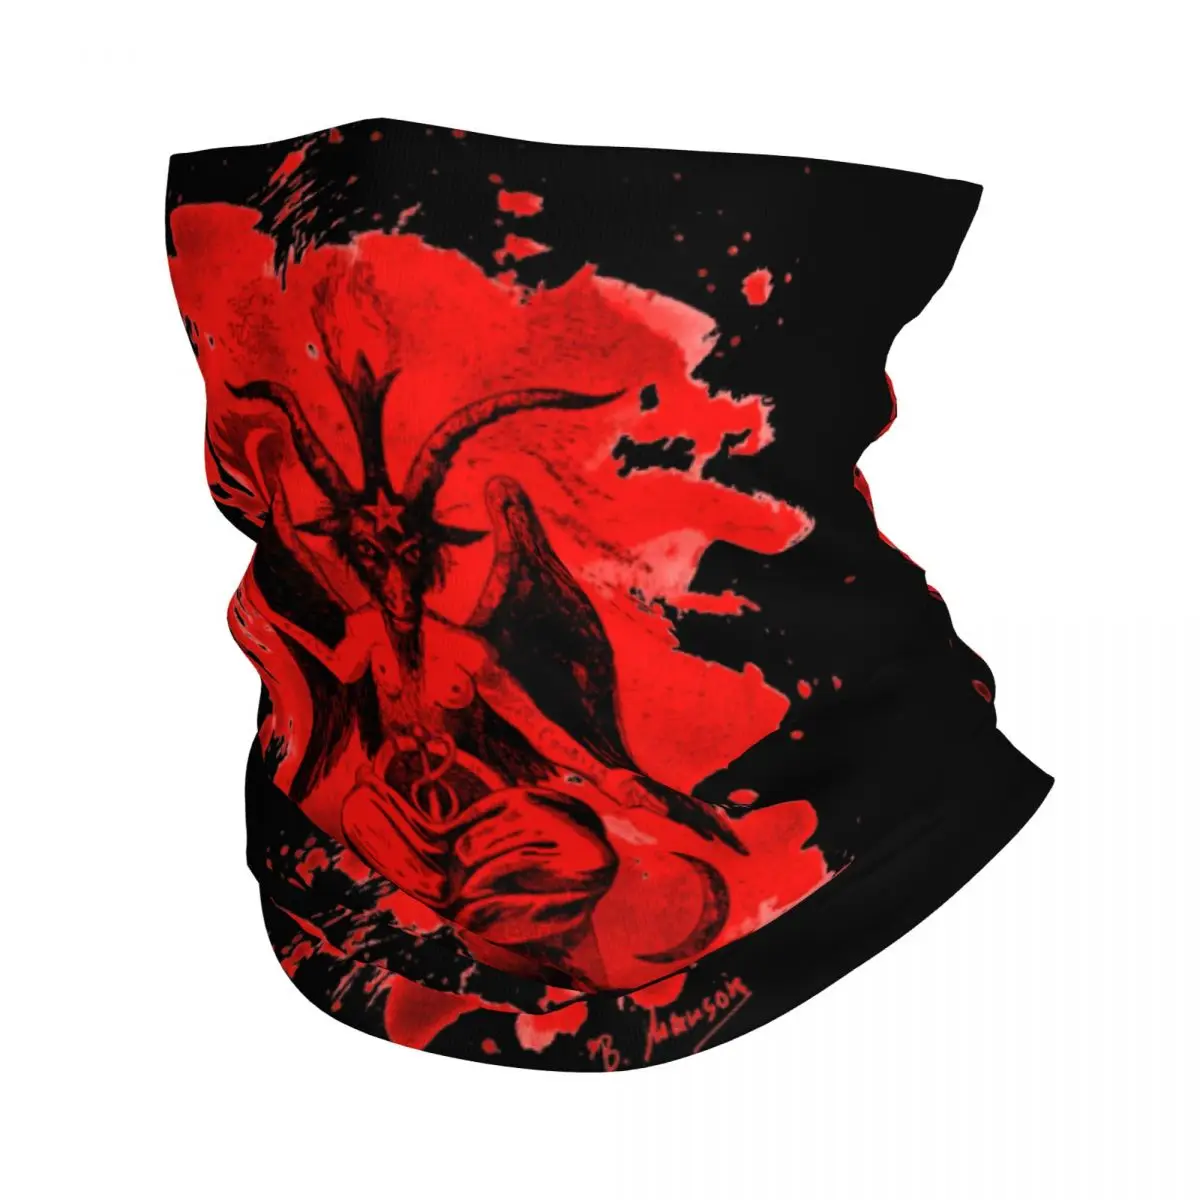 

Бандана Baphomet с рисунком сатаны, дьявола, козы, накидка на шею, готический волшебный шарф с принтом, многофункциональный велосипедный шарф, д...